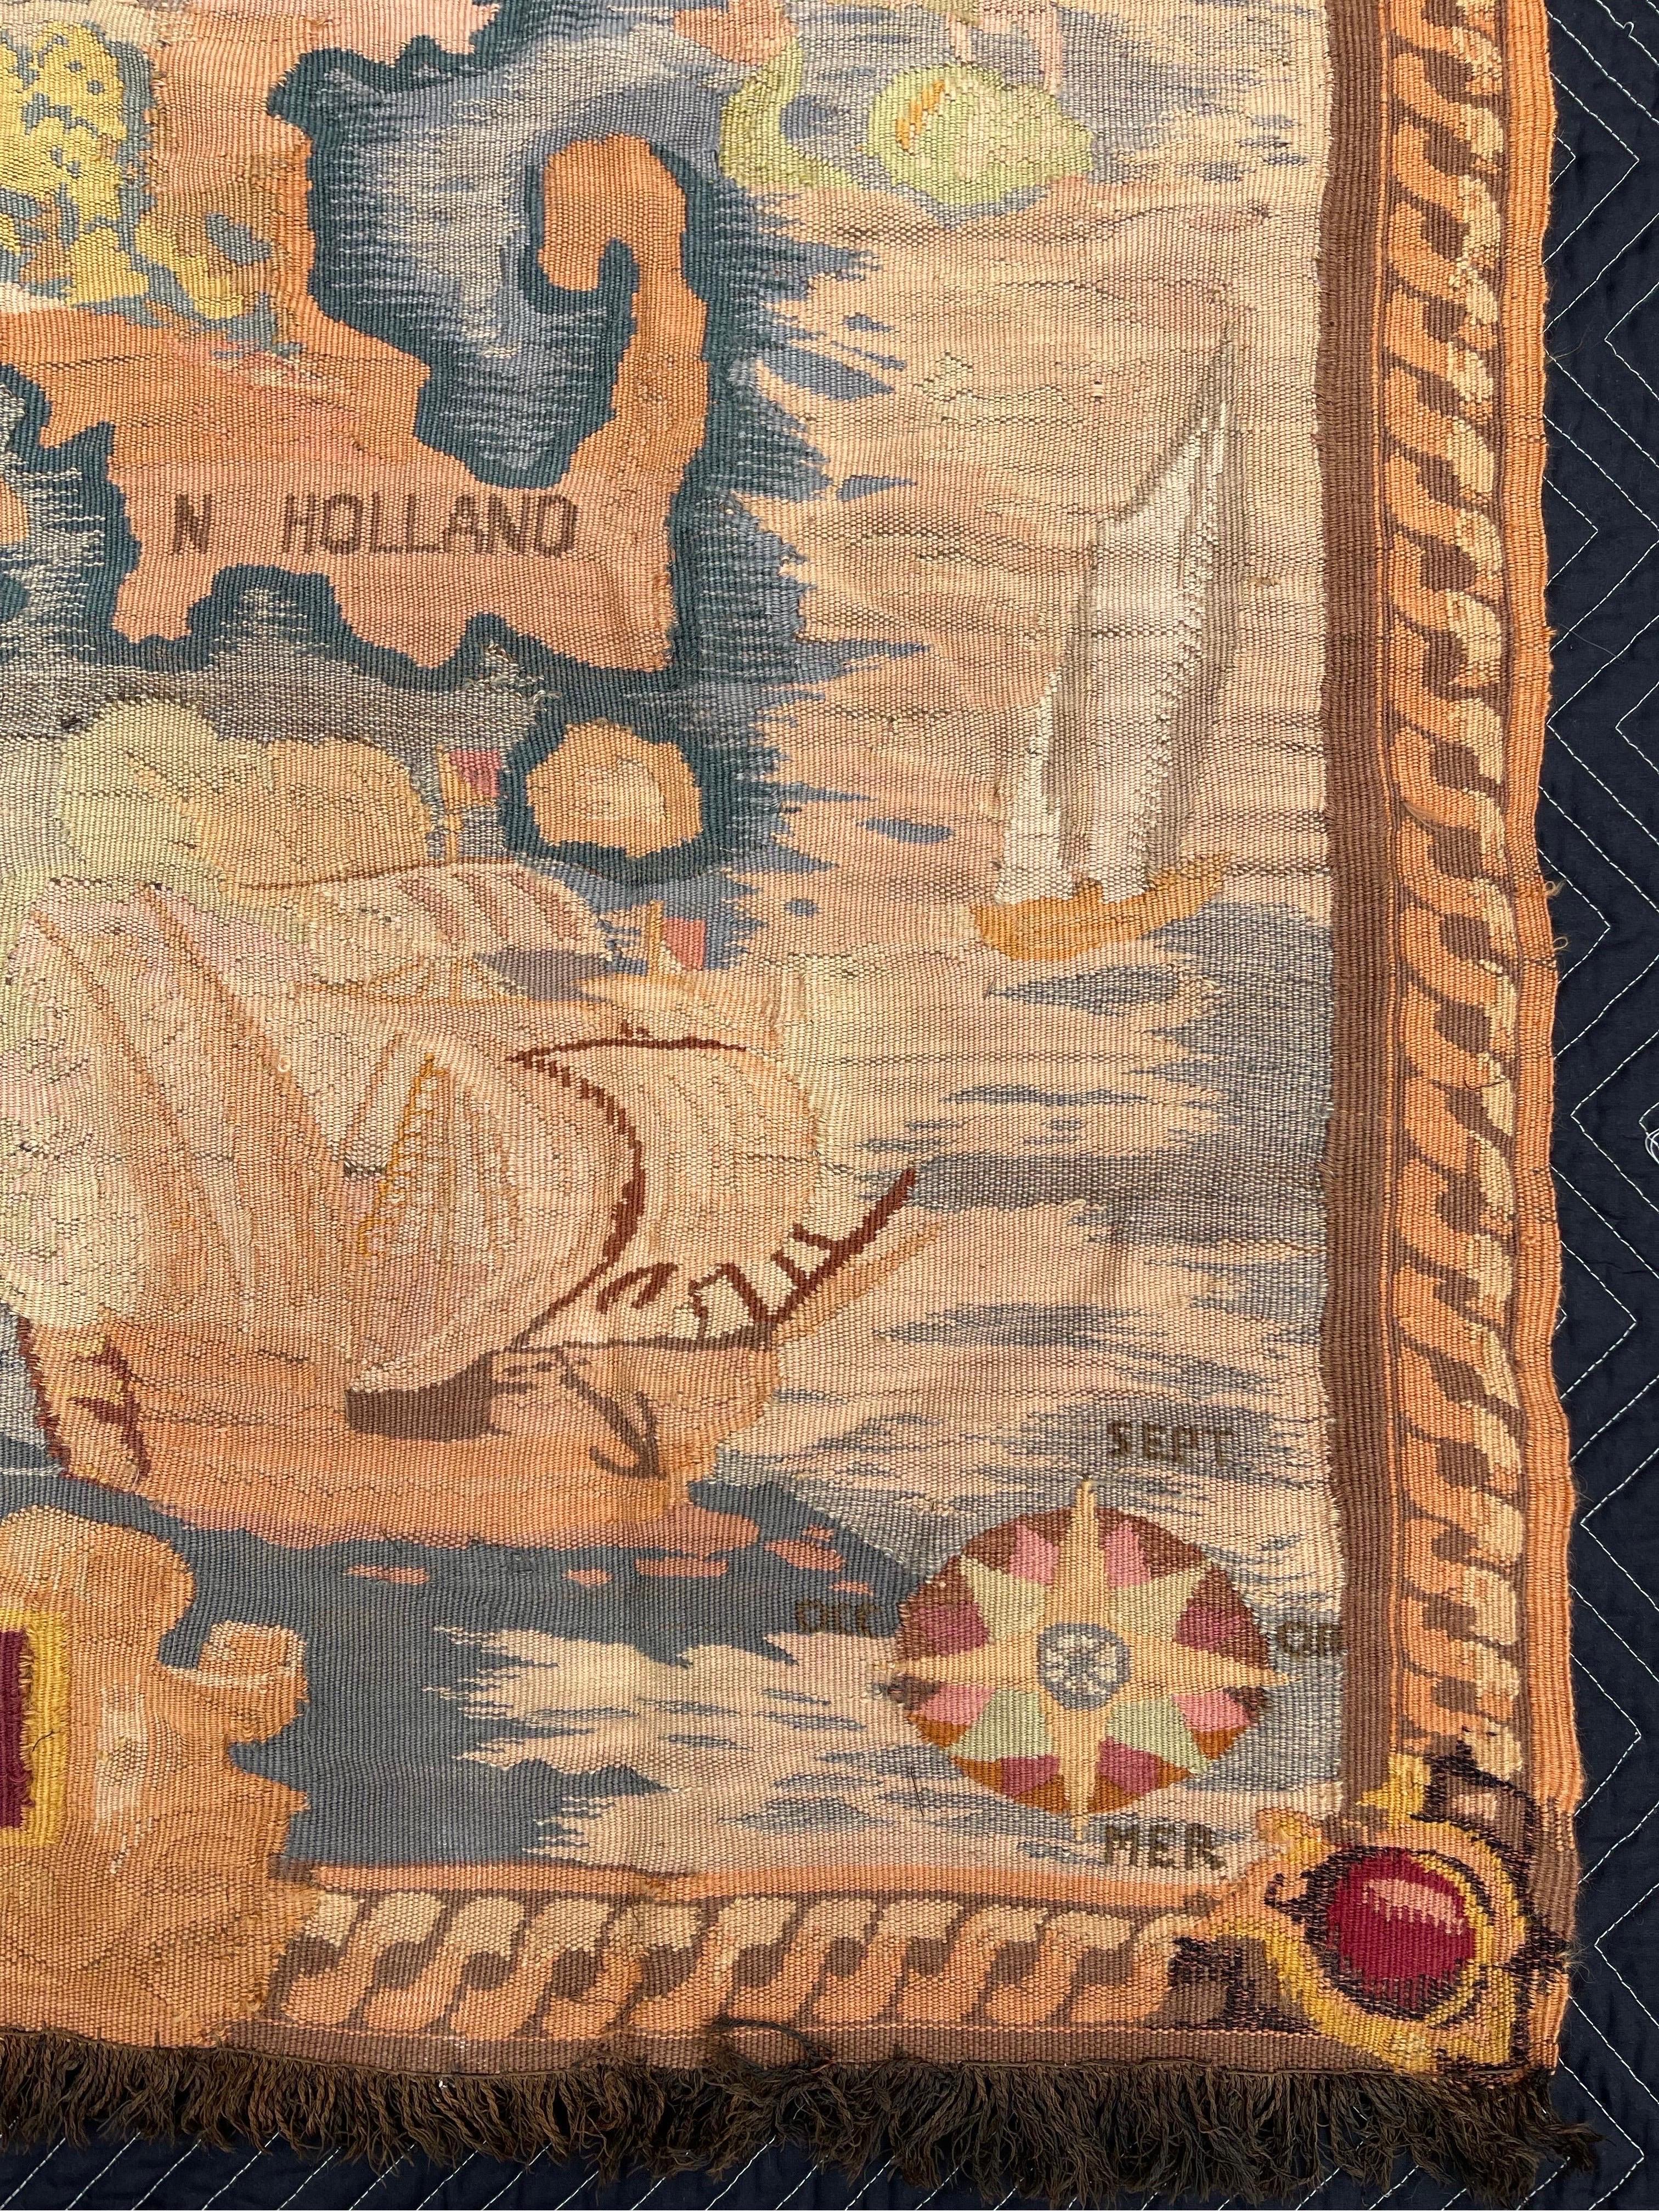 Auffällige Darstellung einer Karte der Neuen Niederlande nach dem Kauf durch die Niederländer im Jahr 1626, einschließlich New Amsterdam oder dem heutigen New York City. Handgefertigt in Frankreich um die Wende des 20. Jahrhunderts.